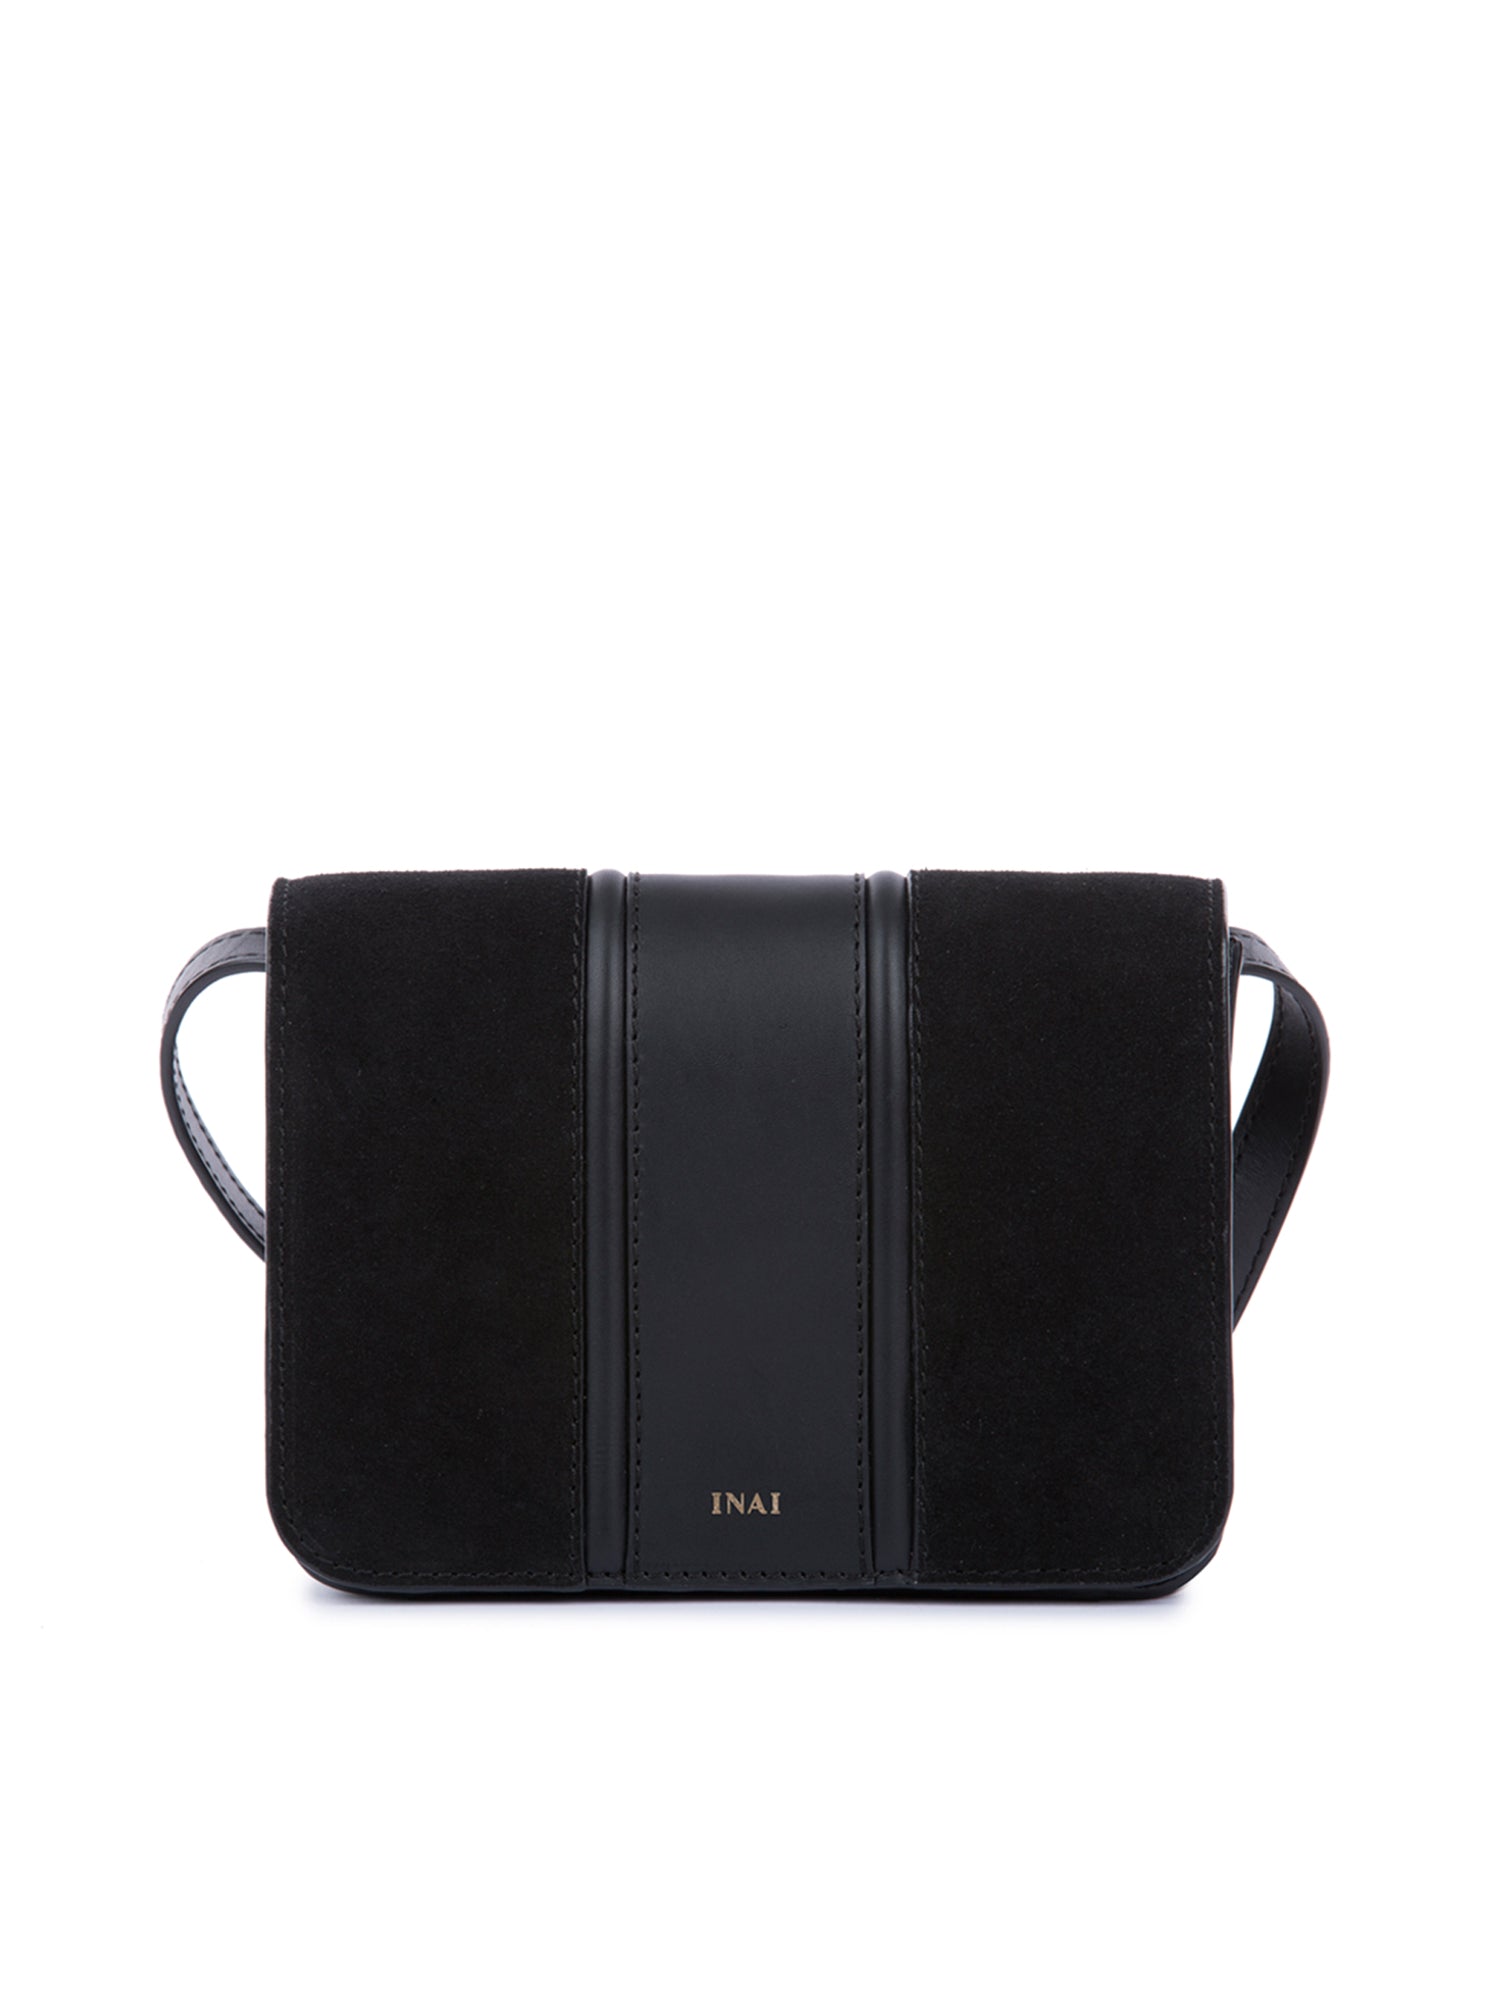 Shop this Mini Bag by Inai | Refash – REFASH